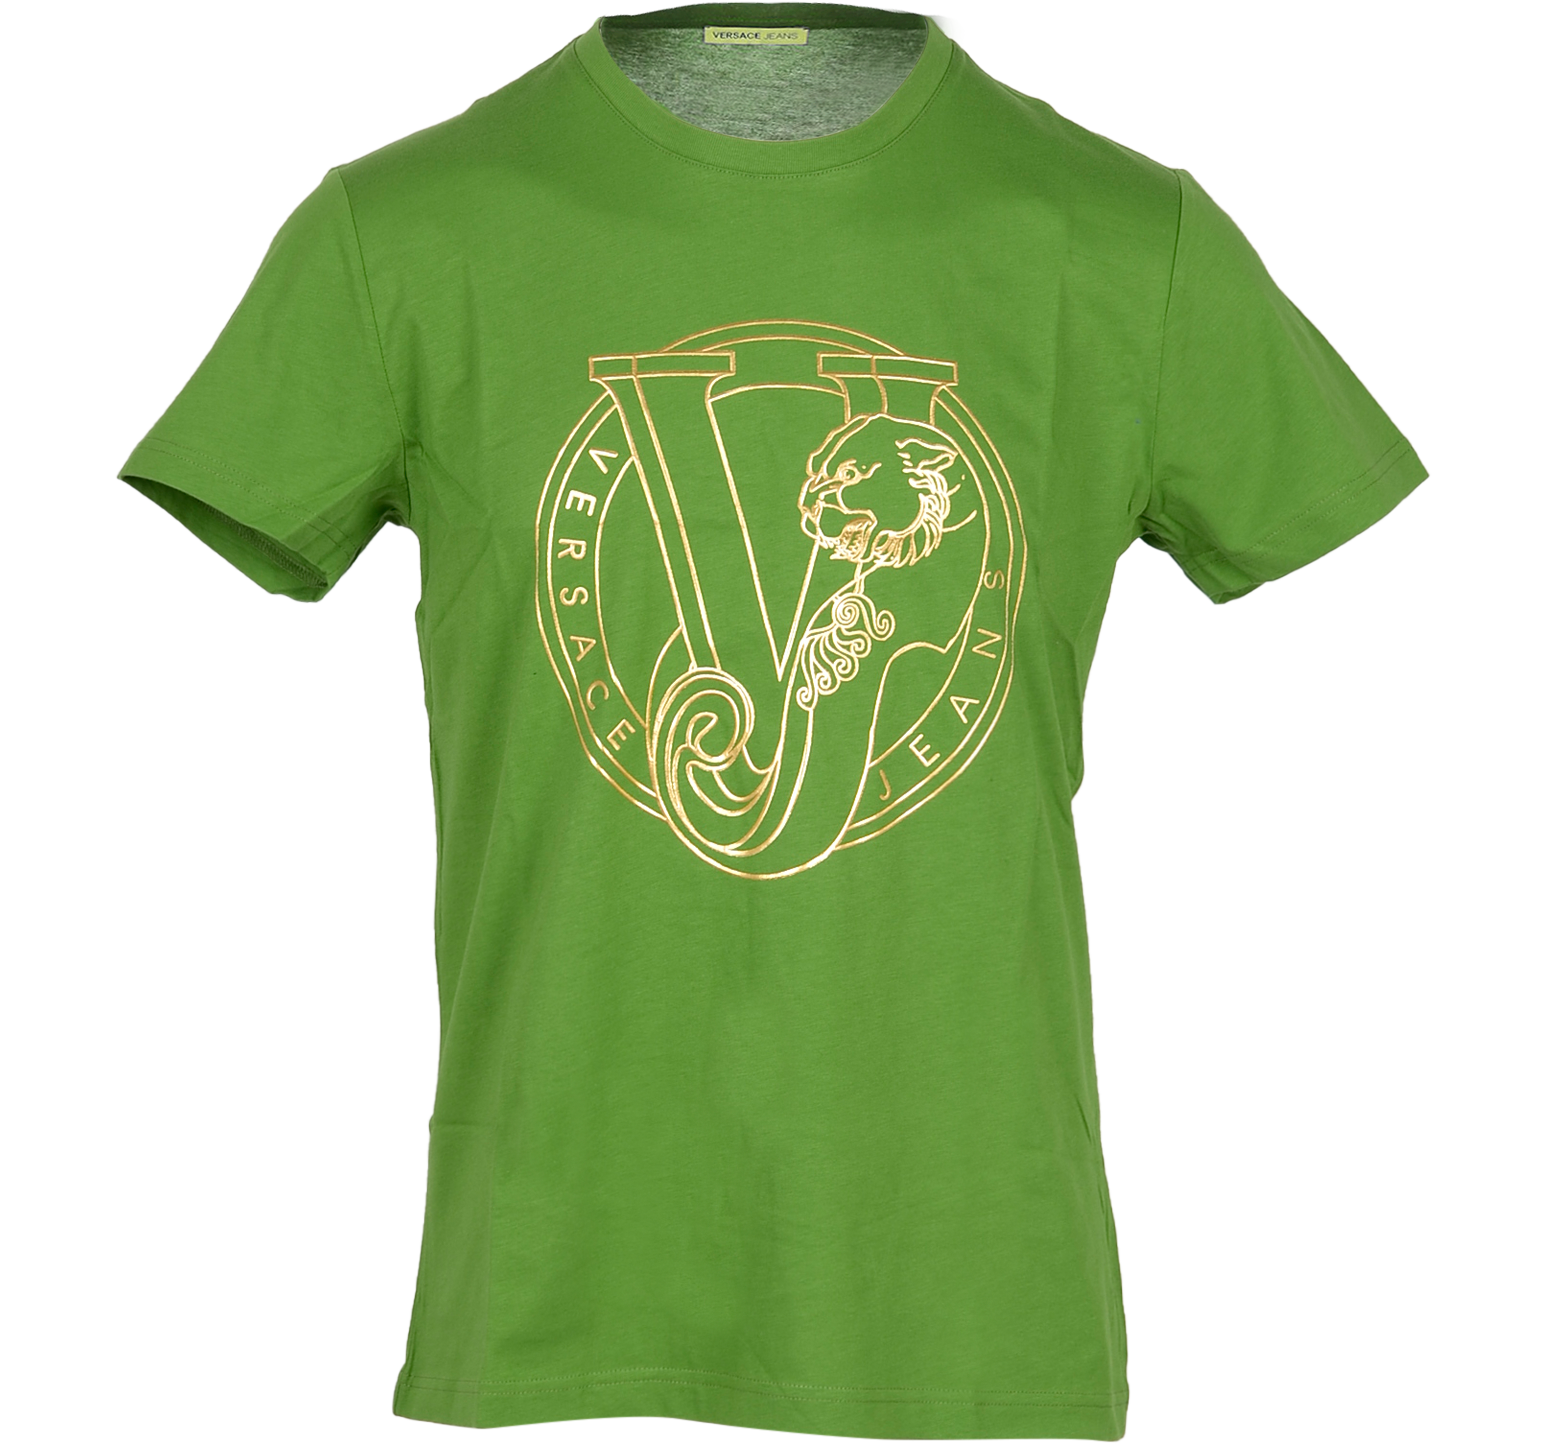 green versace t shirt